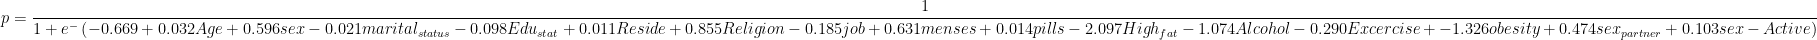 p=\frac{1}{1+e^{-}\left ( -0.669+0.032Age+0.596sex-0.021marital_{status}-0.098Edu_{stat}+0.011Reside+0.855Religion-0.185job+0.631menses+0.014pills-2.097High_{fat}-1.074Alcohol-0.290Excercise+-1.326obesity+0.474sex_{partner}+0.103sex-Active\right )}